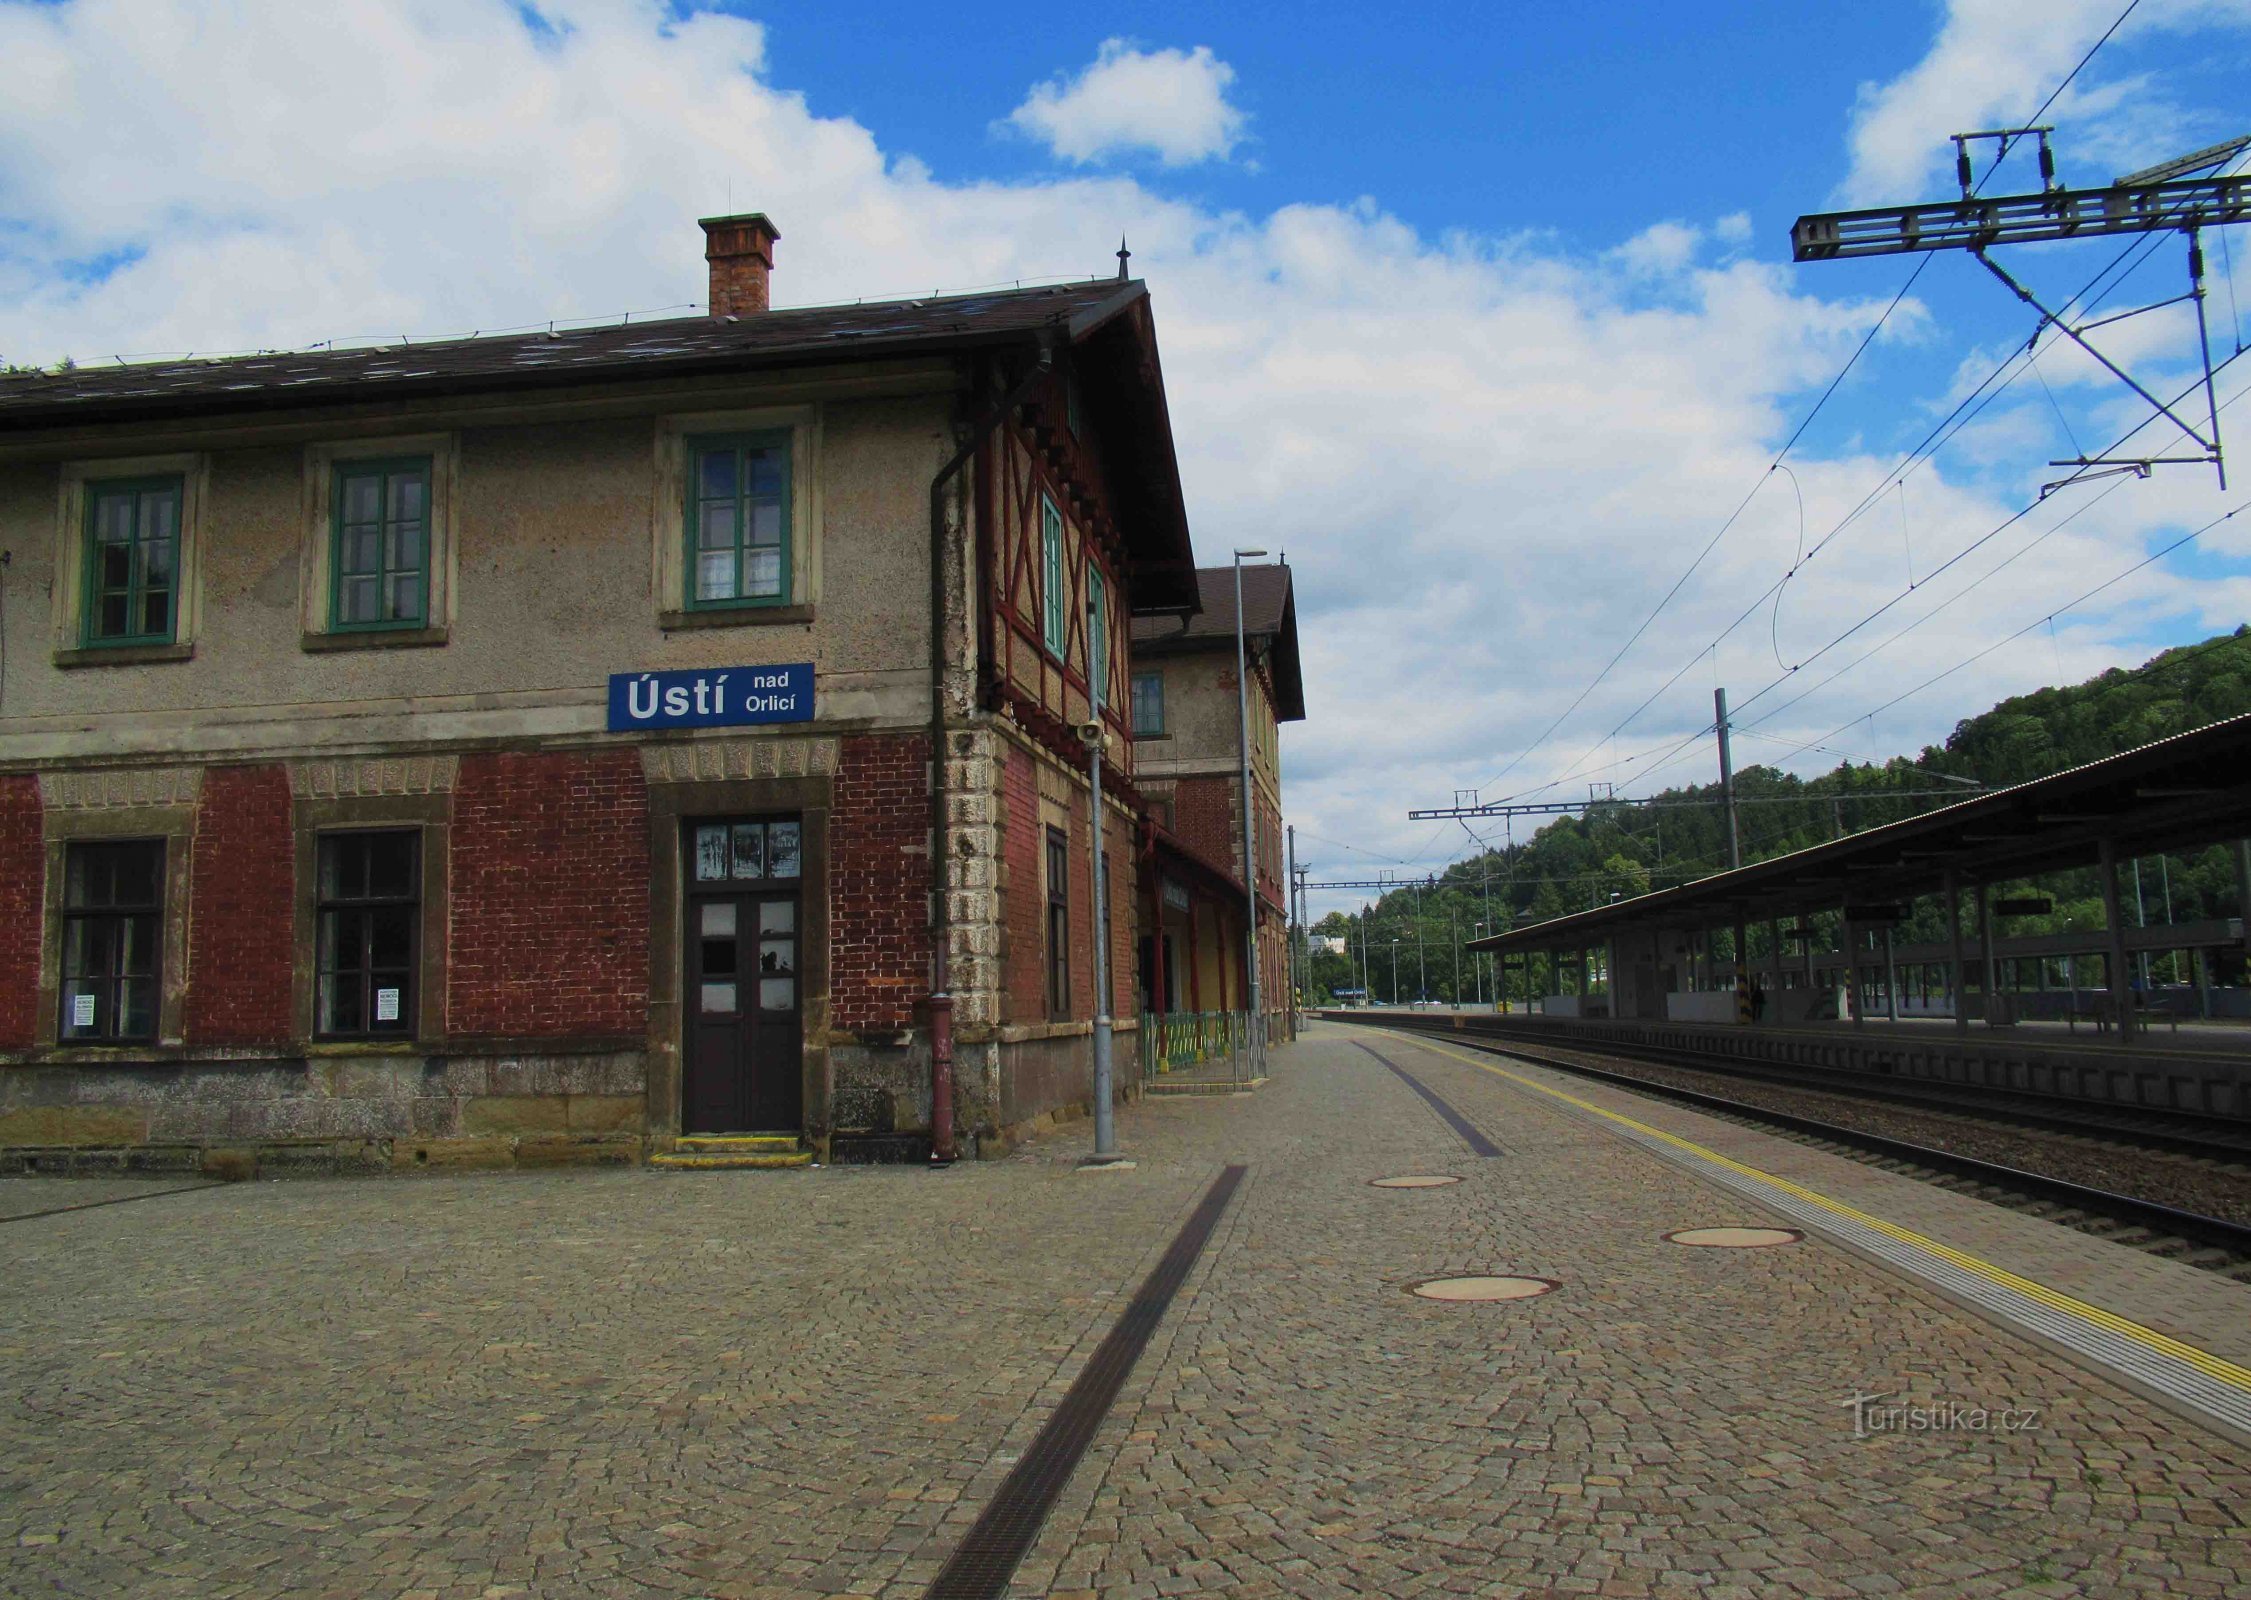 Ιστορικό κτήριο του σιδηροδρομικού σταθμού στο Ústí nad Orlicí